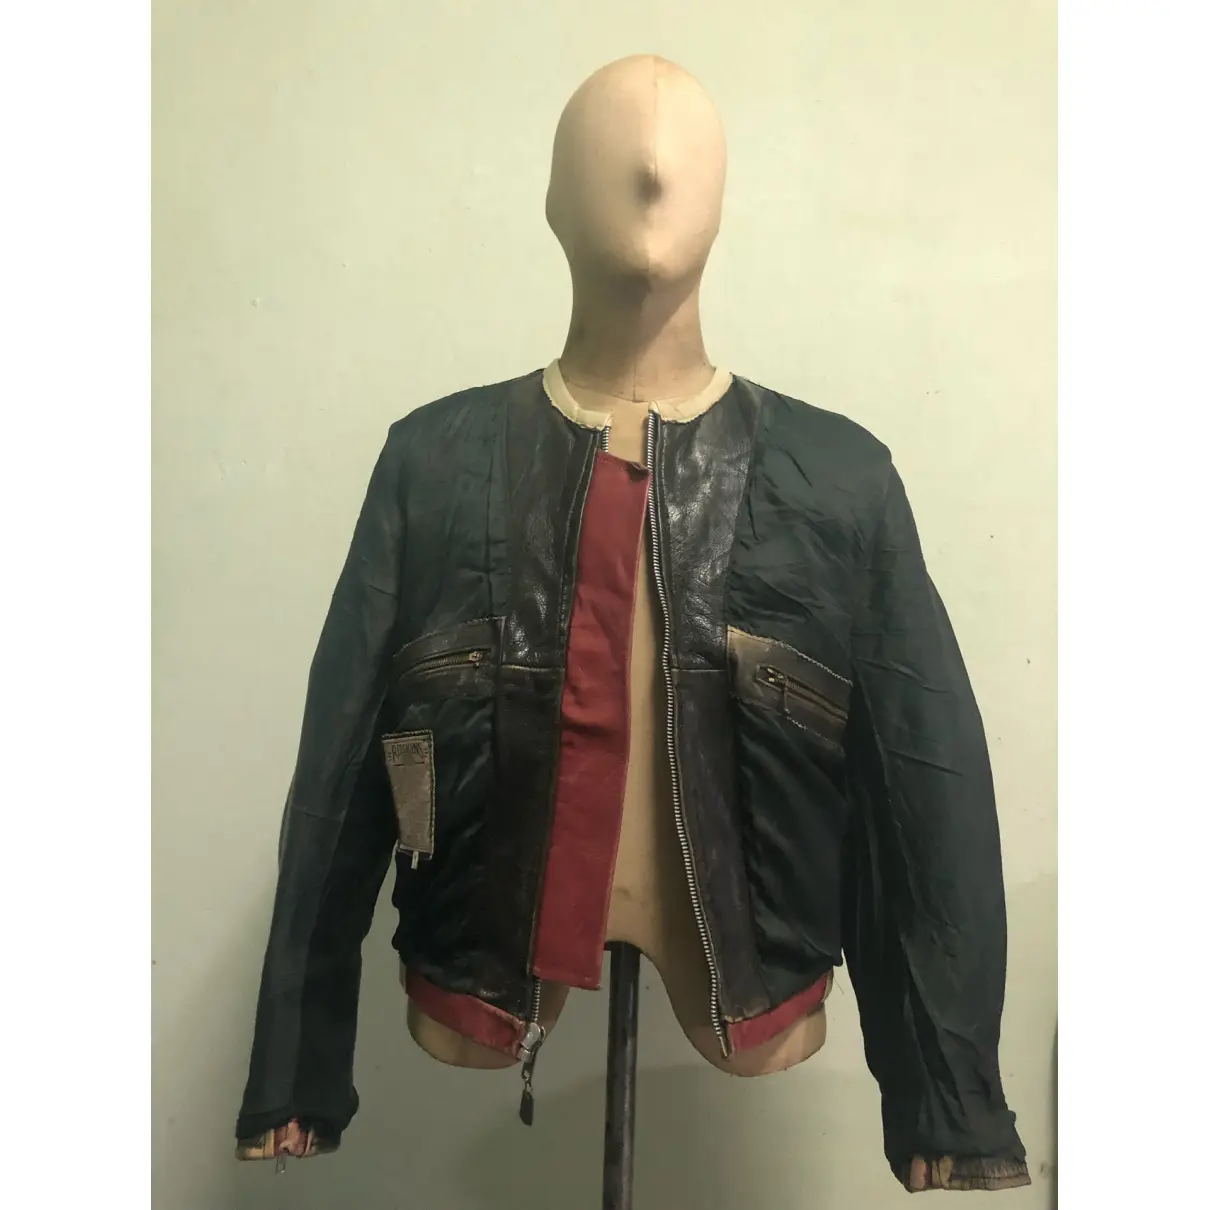 Leather jacket REDSKINS - Vintage